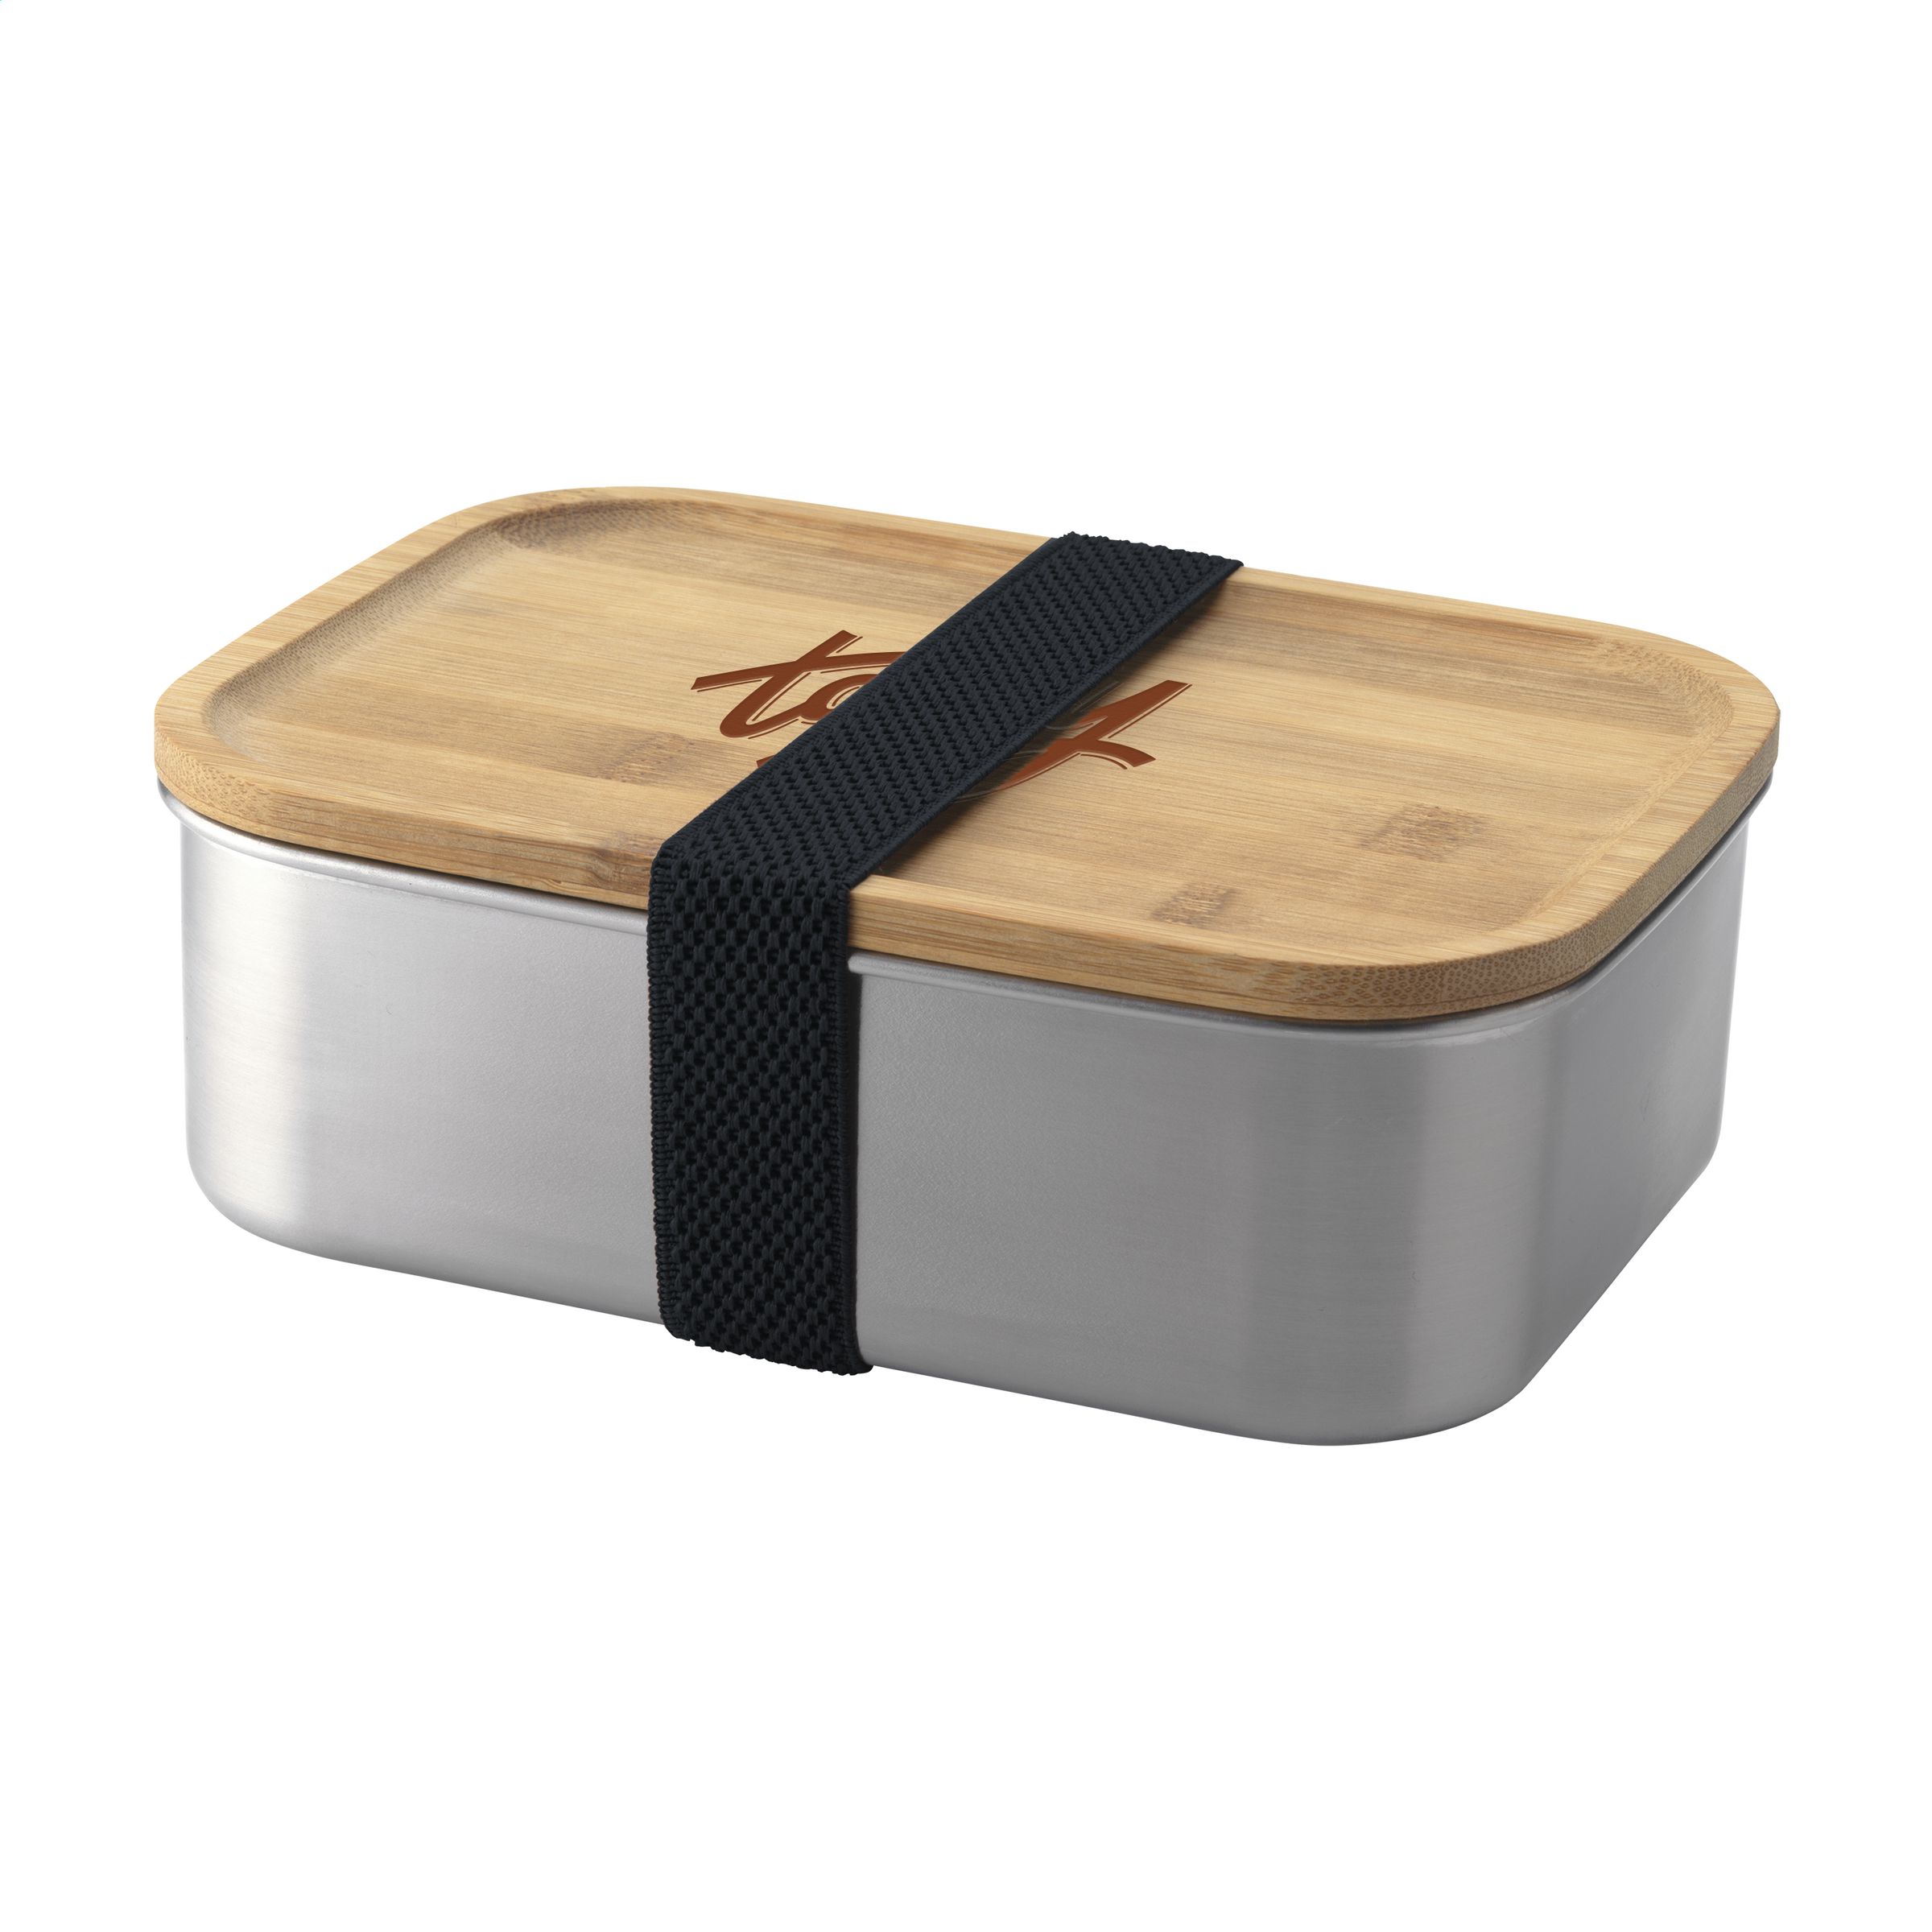 RVS Lunchbox - Voordelig & snel bestellen